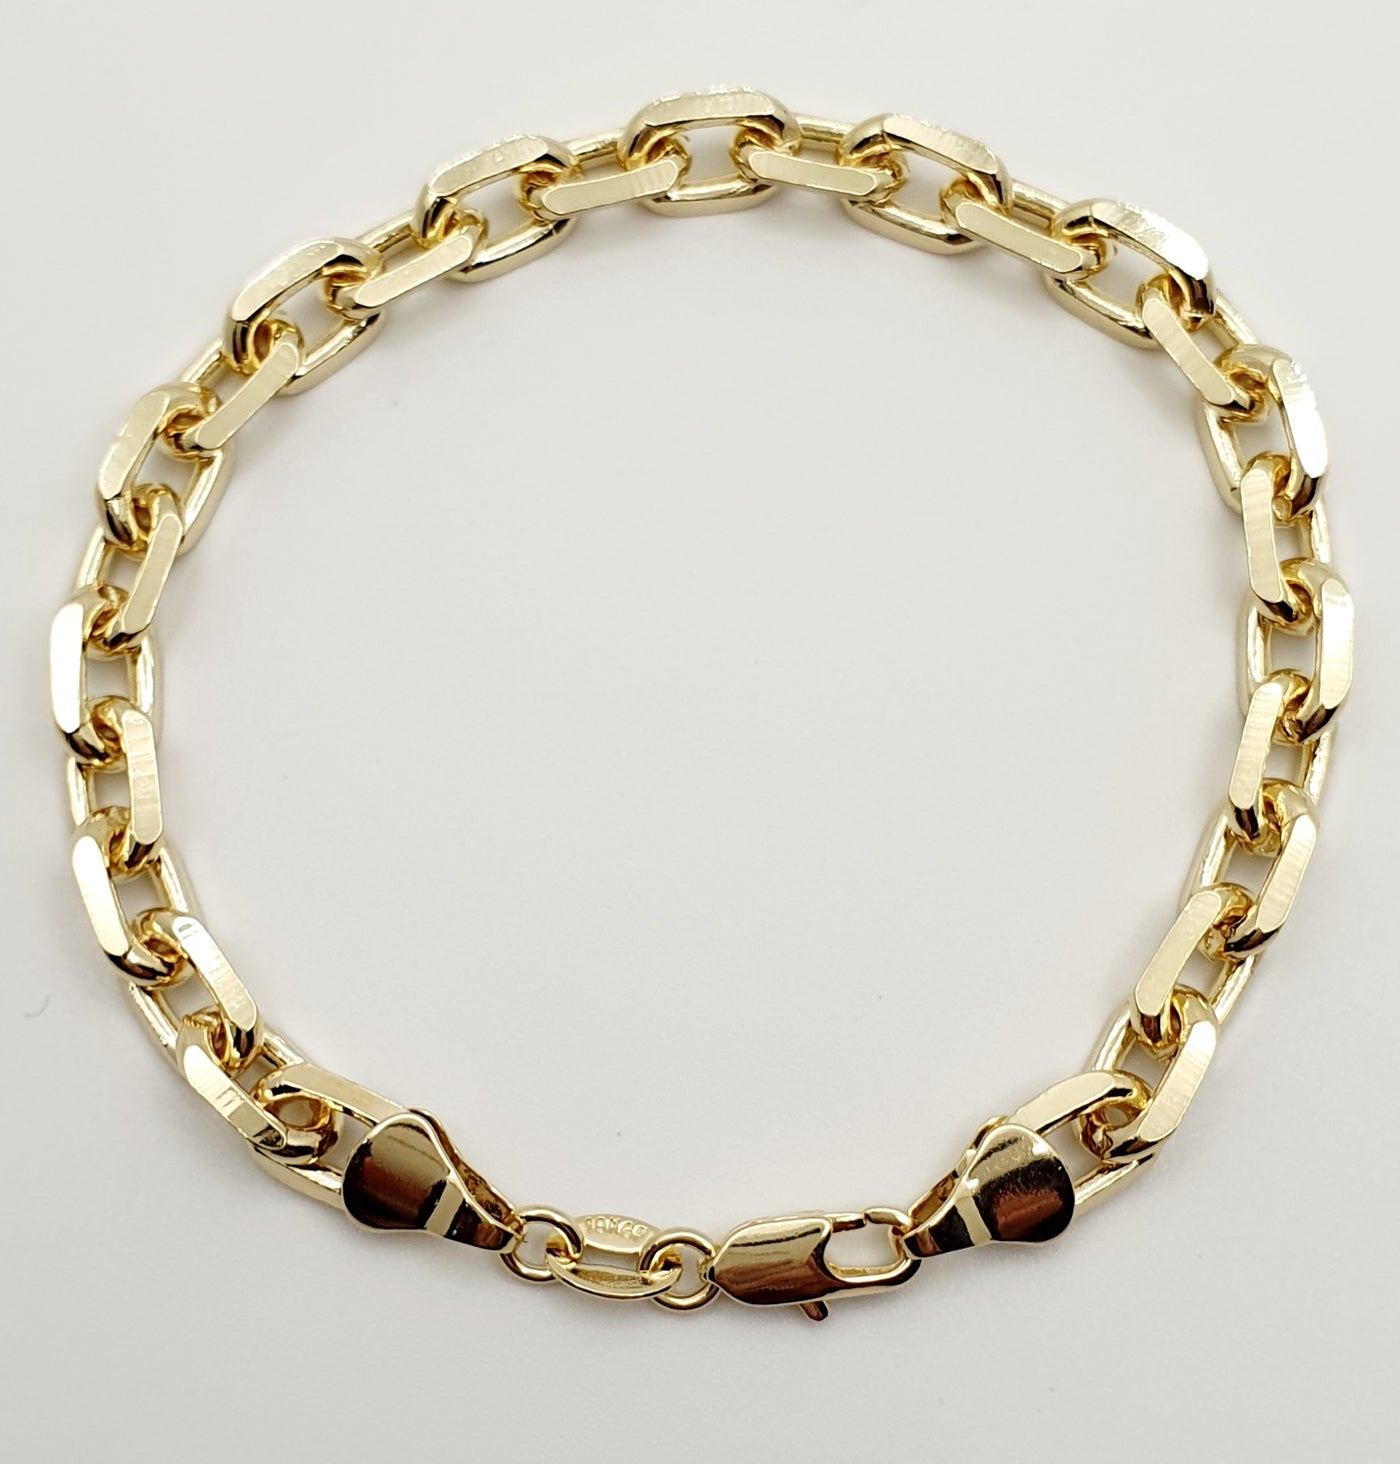 18K Gold Filled 7Mm Wide Link Bracelet